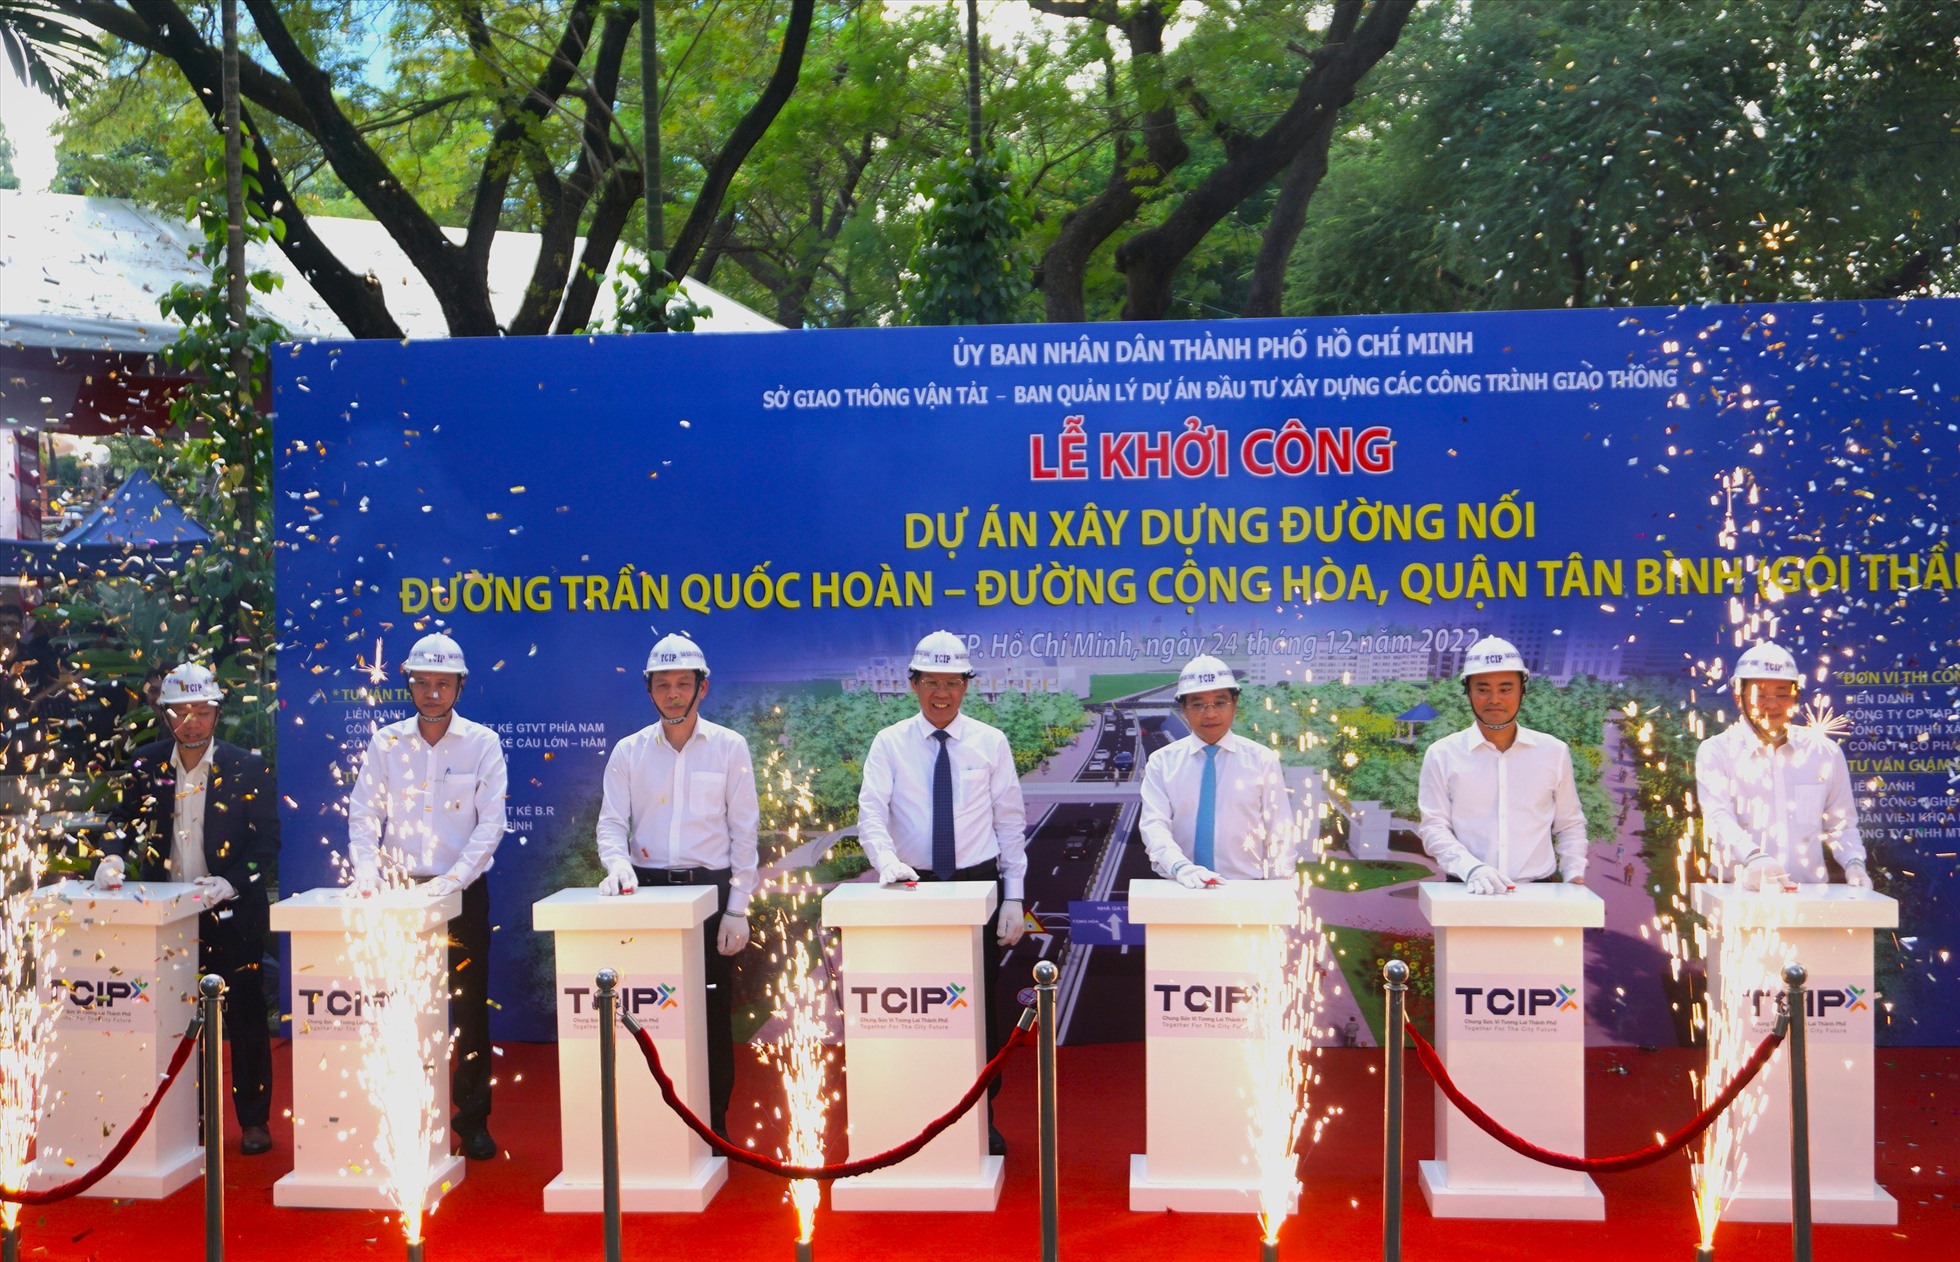 Các đại biểu nhấn nút khởi công dự án đường nối Trần Quốc Hoàn - Cộng Hòa.  Ảnh: Minh Quân